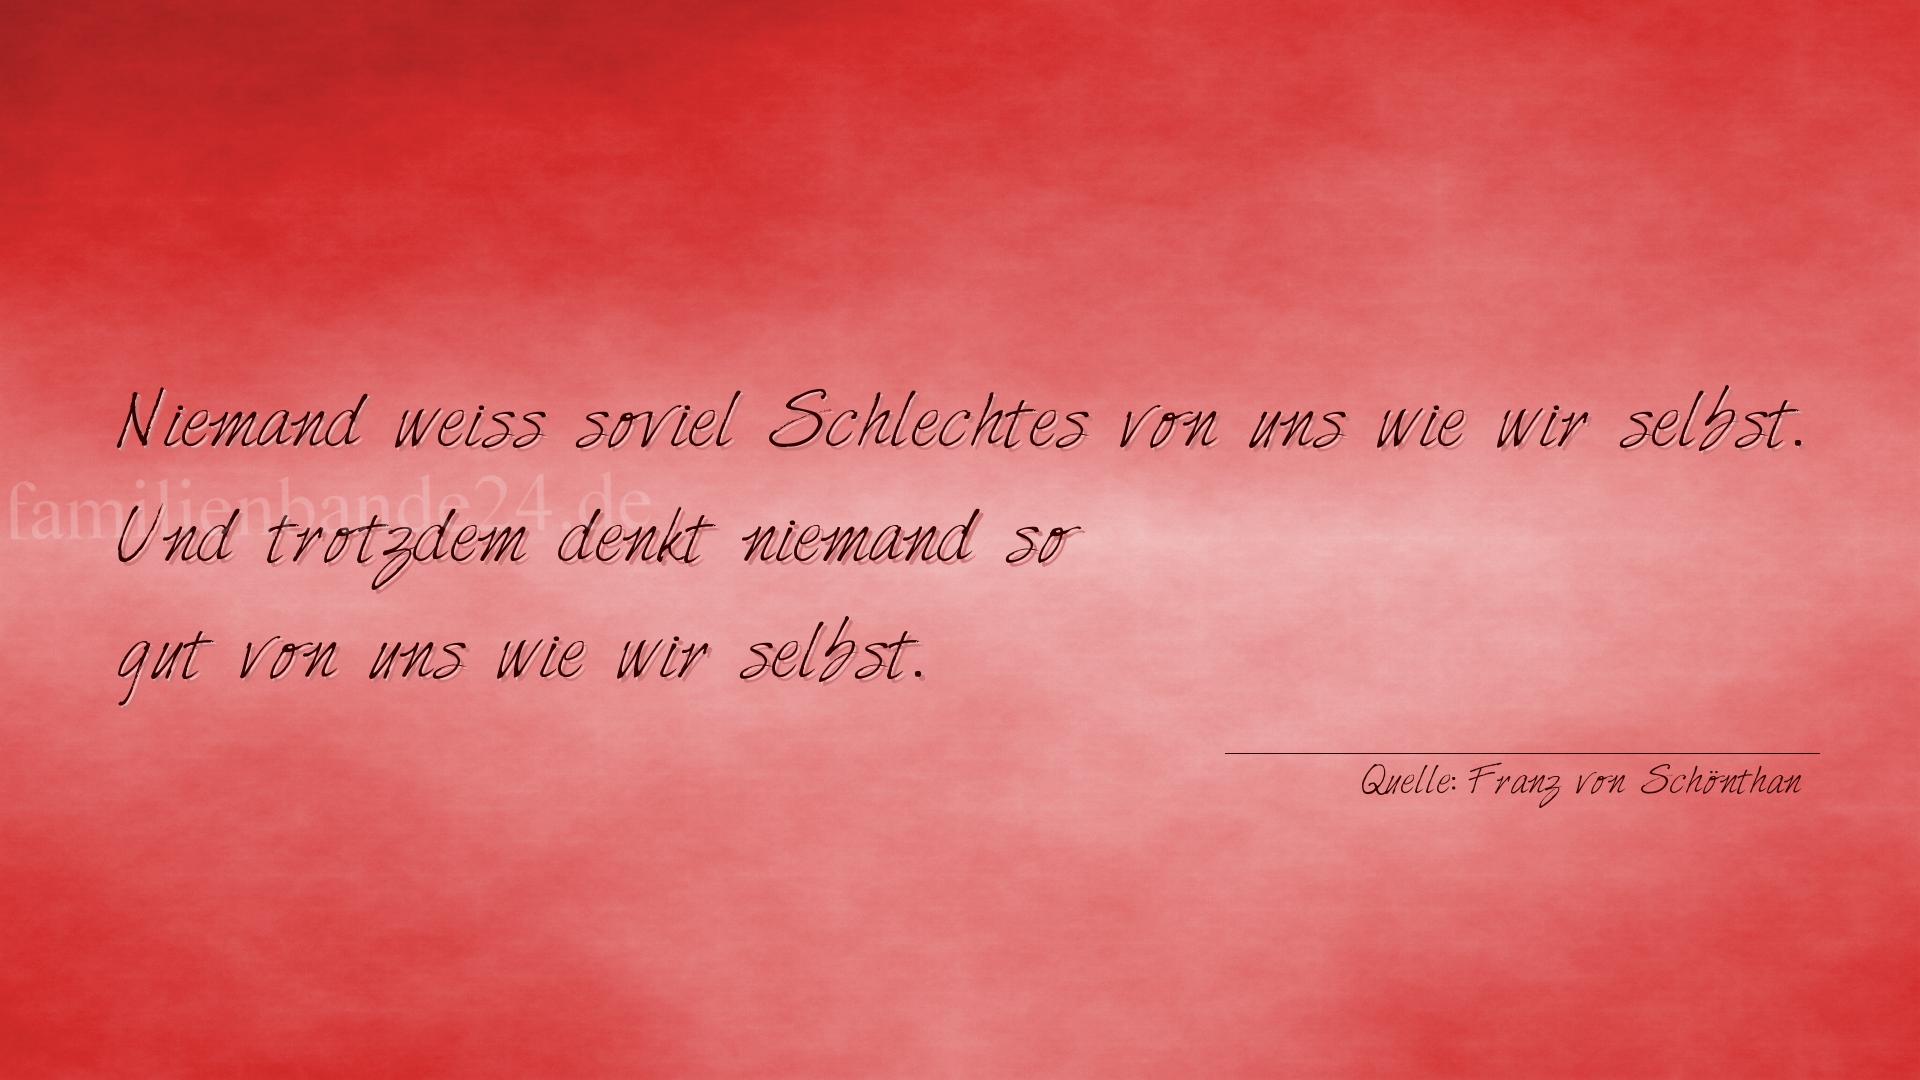 Aphorismus Nr. 1332 (von Franz von Schönthan): "Niemand weiß soviel Schlechtes von uns wie wir selbst. U [...]